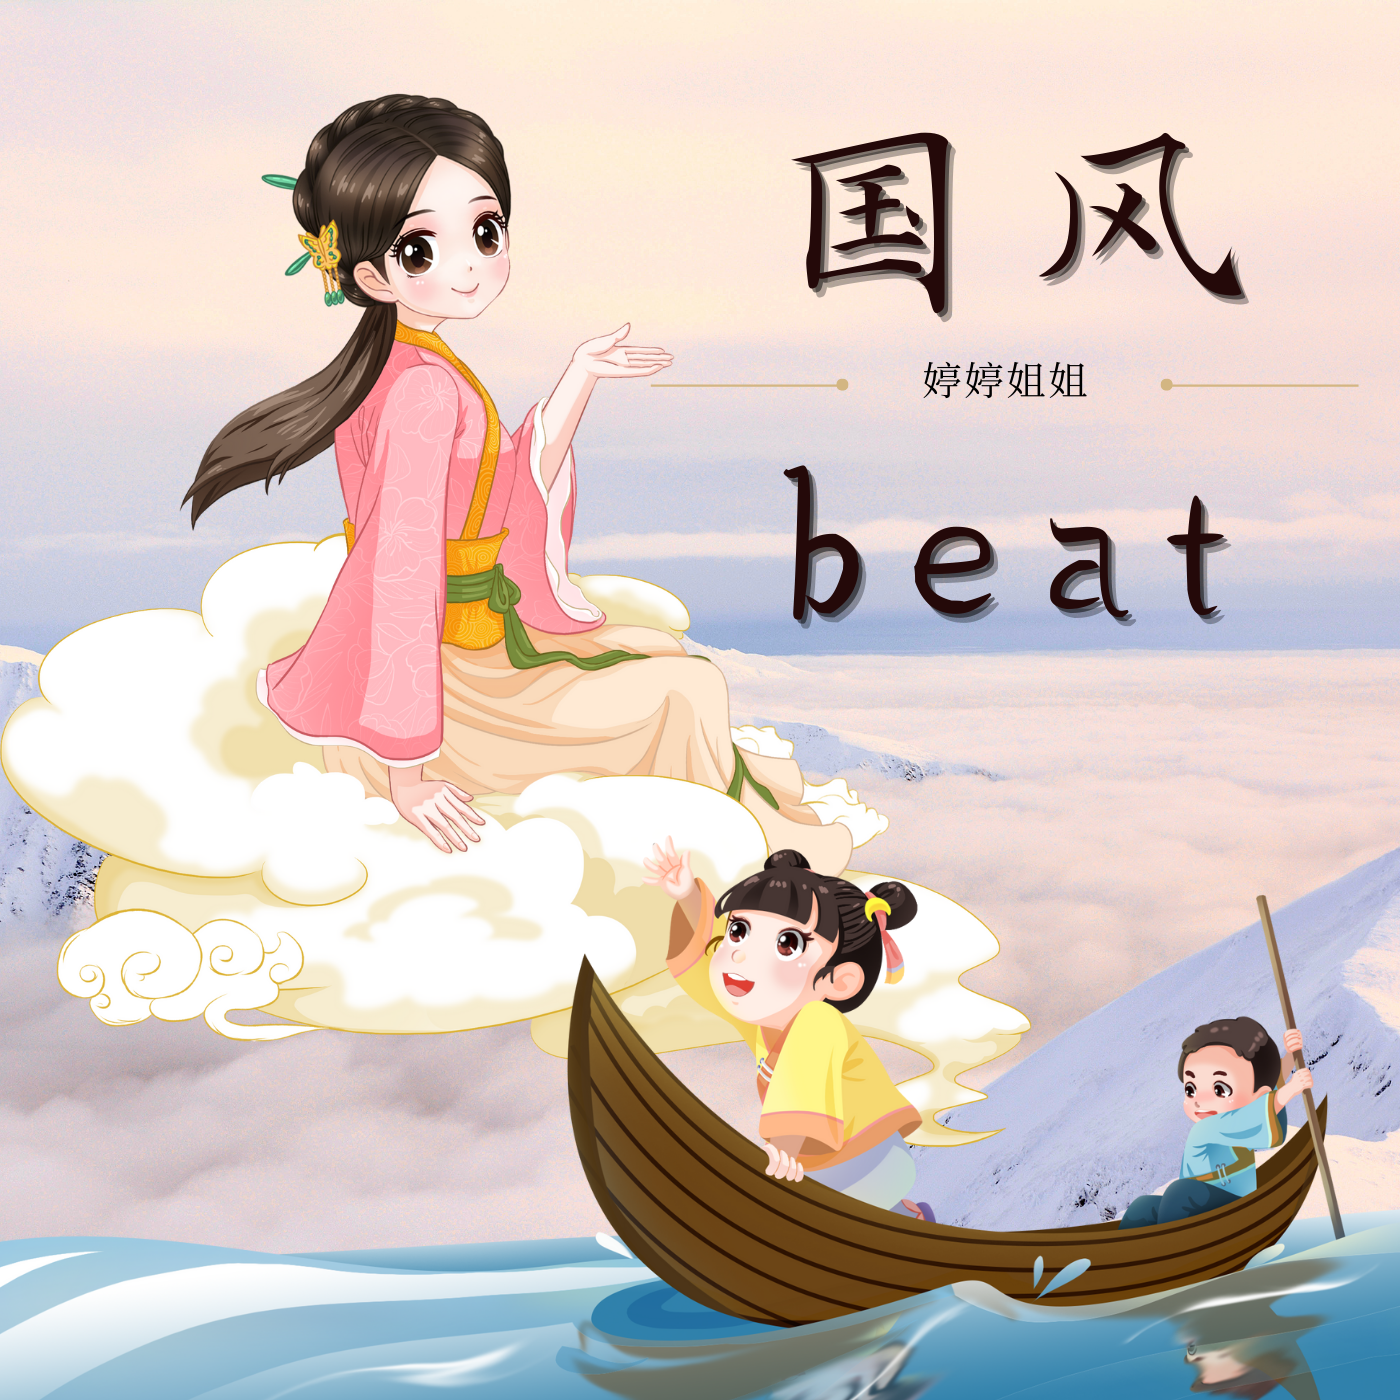 婷婷姐姐 - “陋室铭”-中国风/Chinese type beat-BPM140